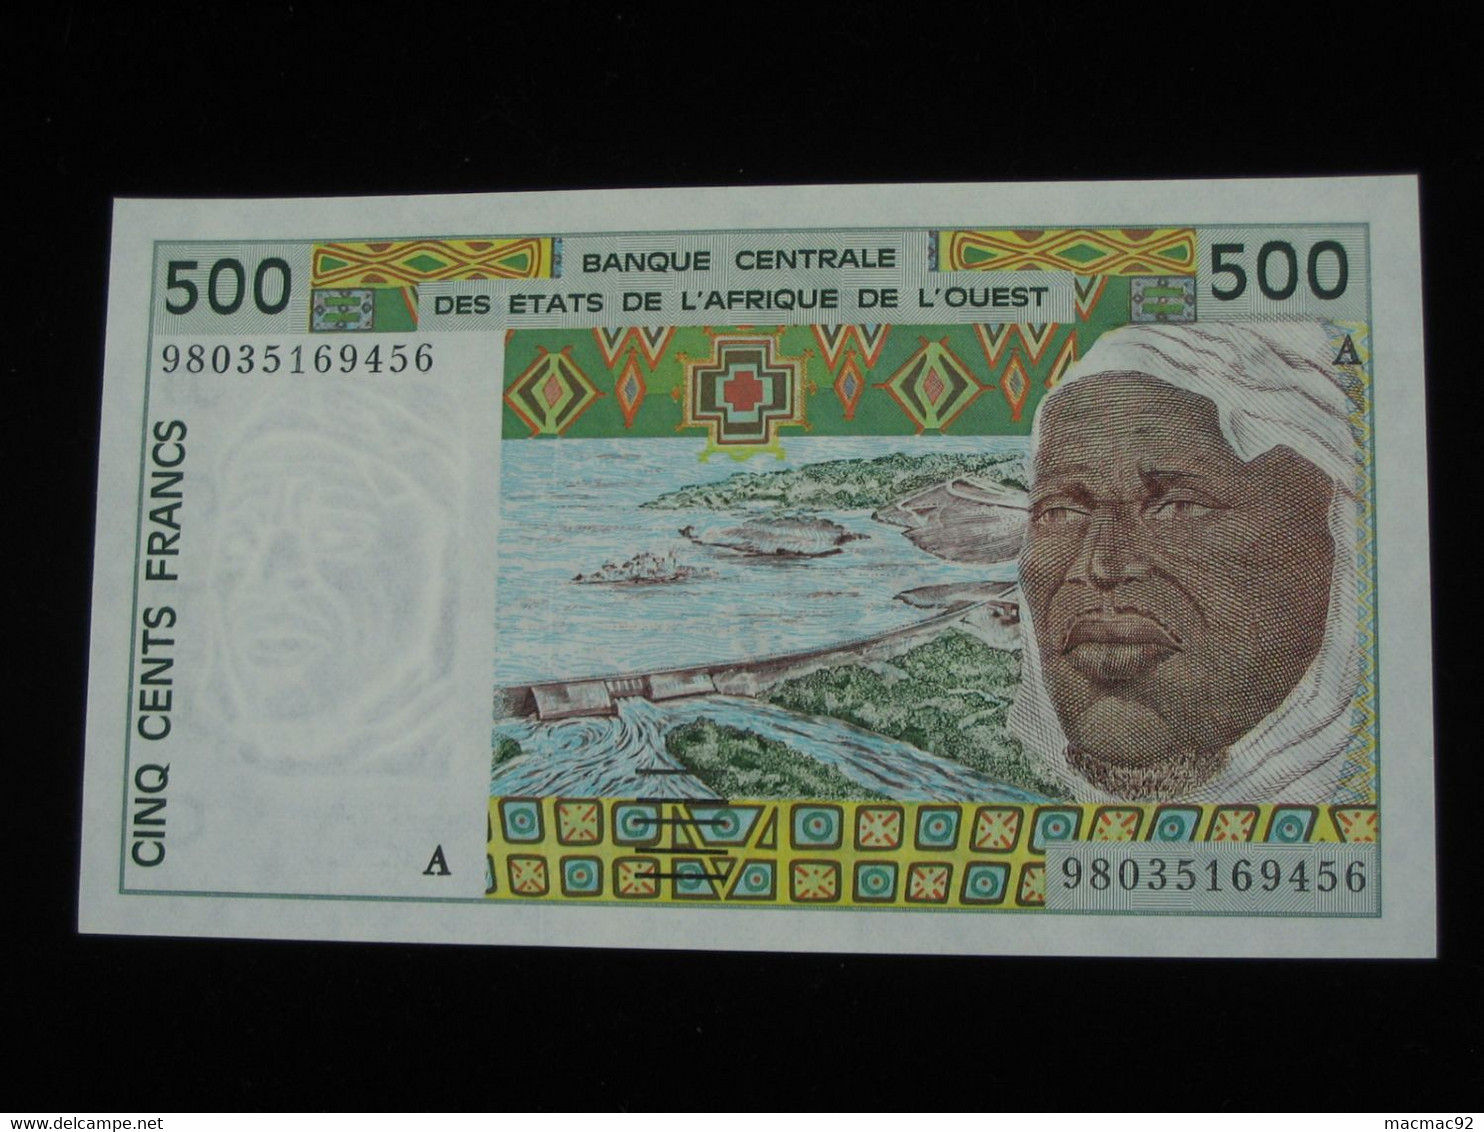 COTE D'IVOIRE -  500 Francs 1996-1997 A - Banque Centrale Des Etats De L'Afrique De L'Ouest  **** EN ACHAT IMMEDIAT **** - Costa D'Avorio